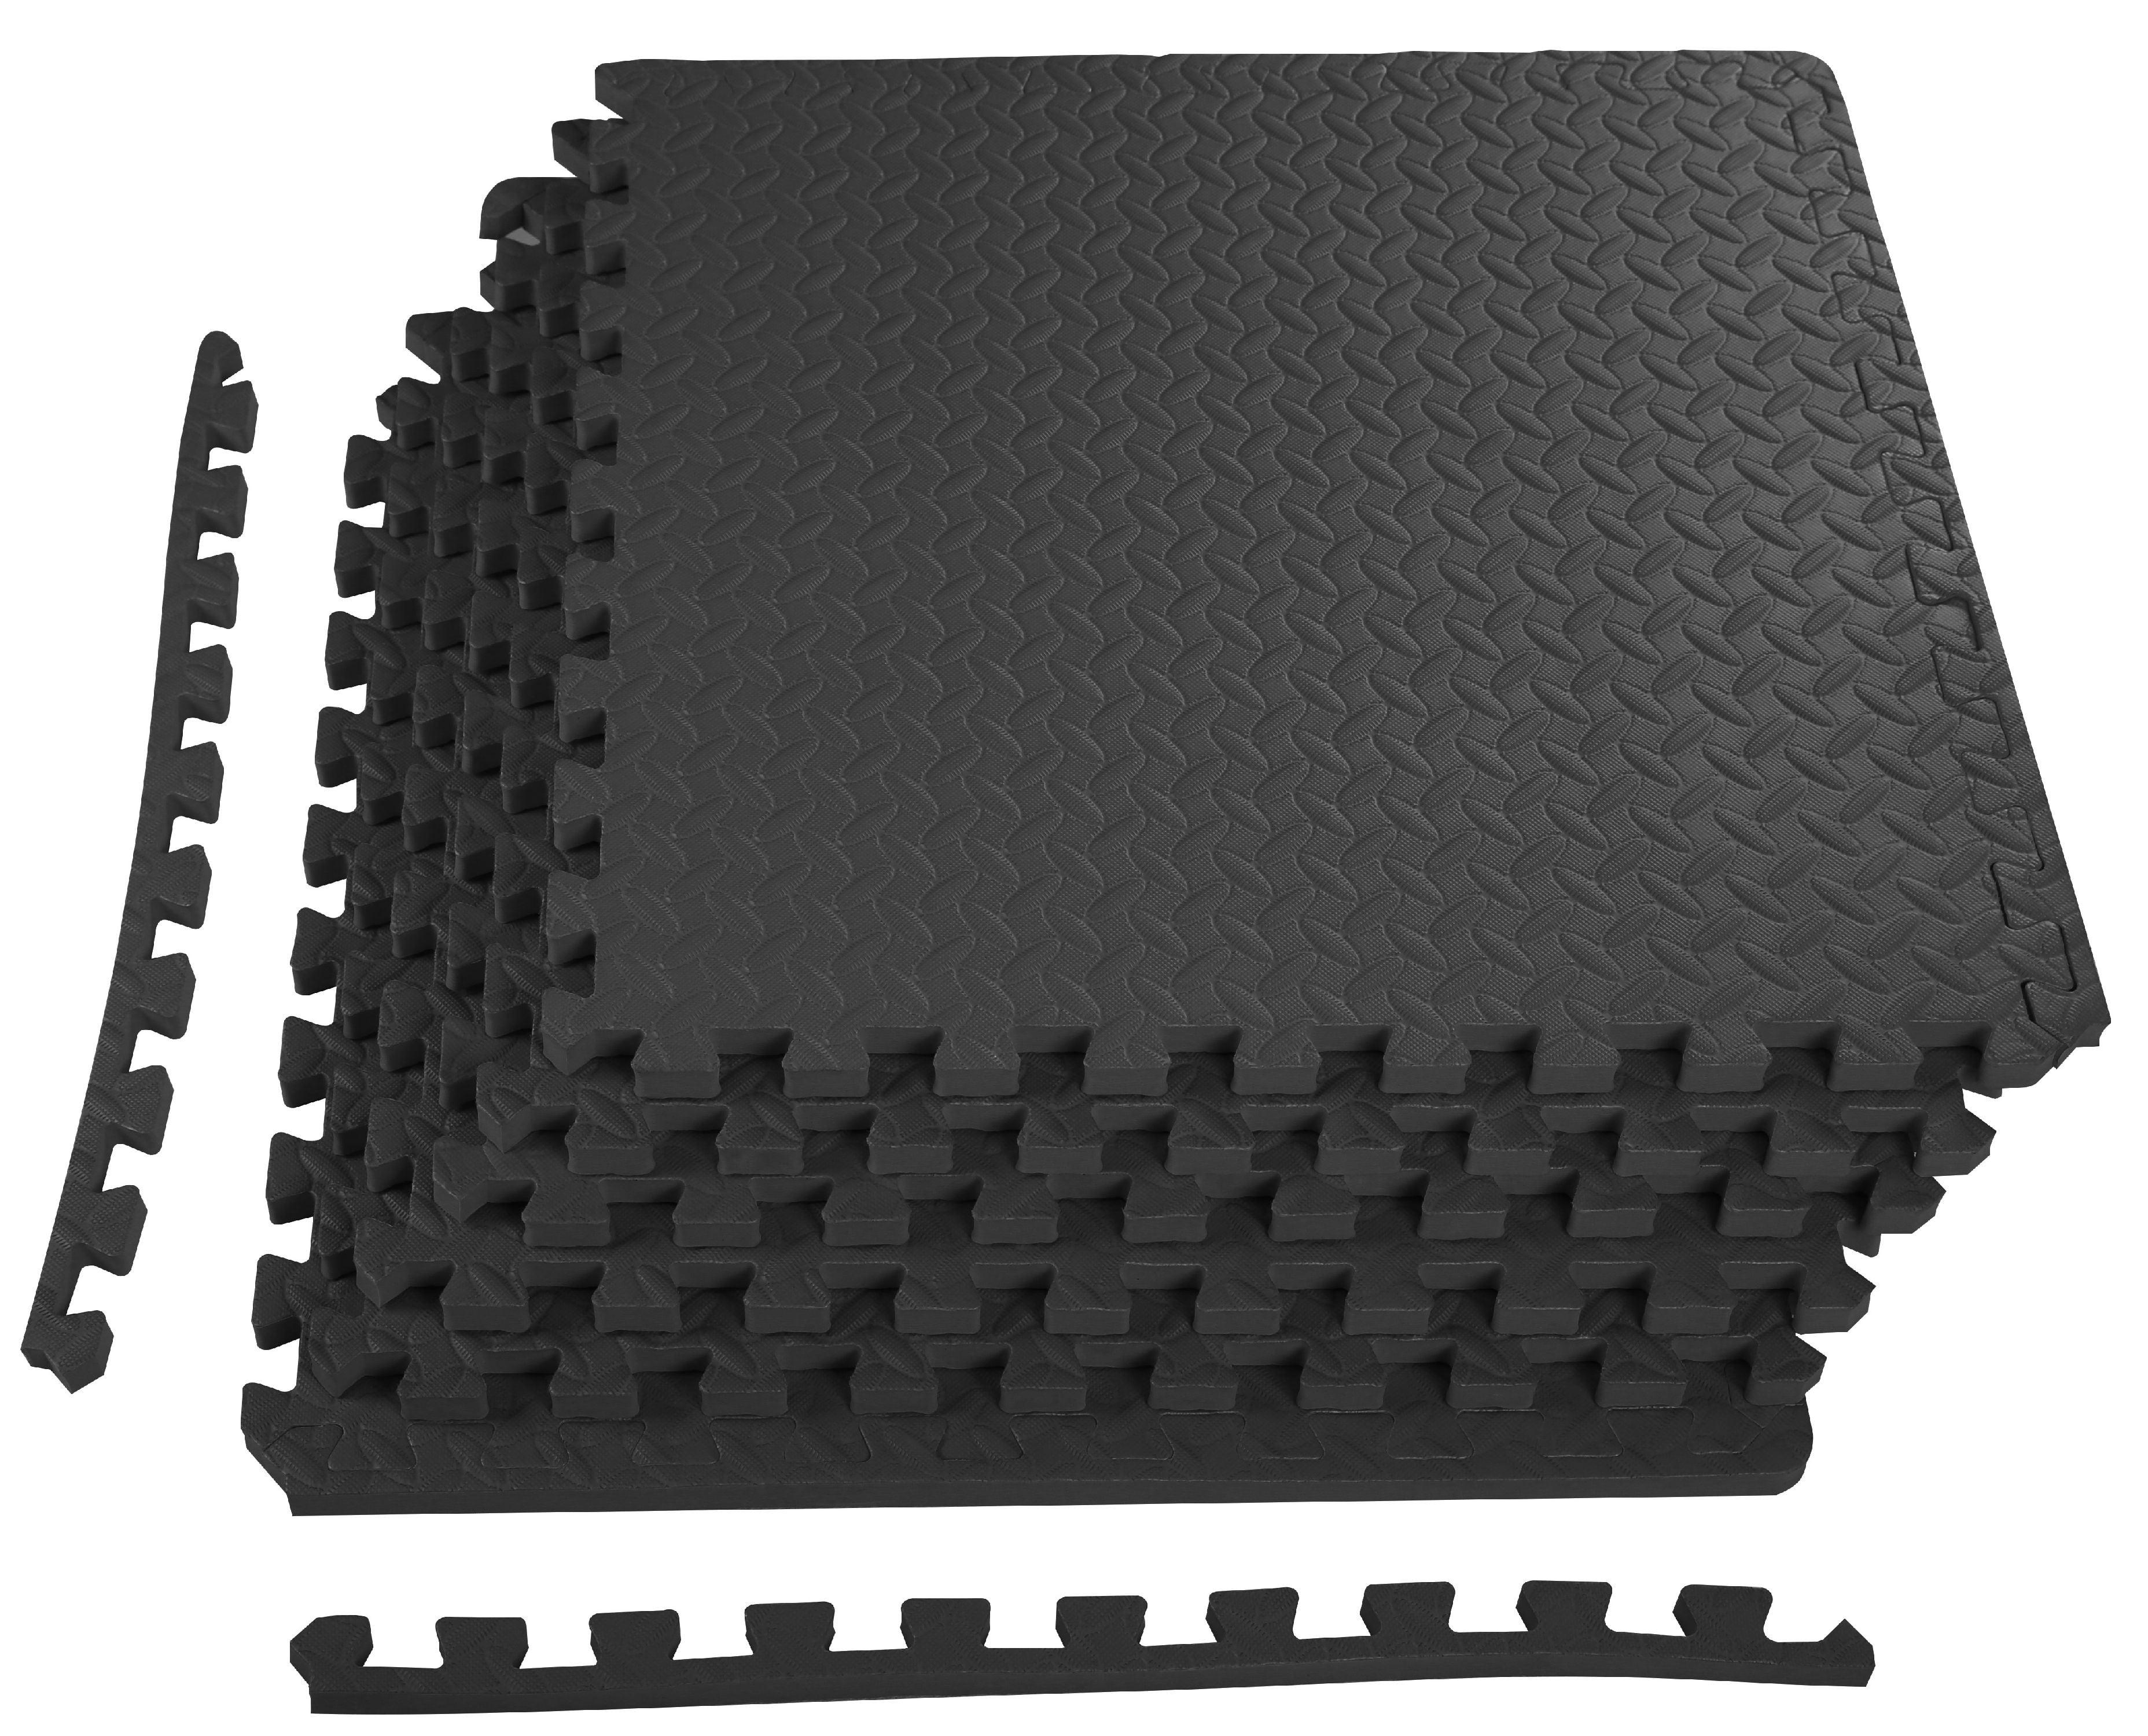 96 sq ft red interlocking foam floor puzzle tiles mats puzzle mat flooring 